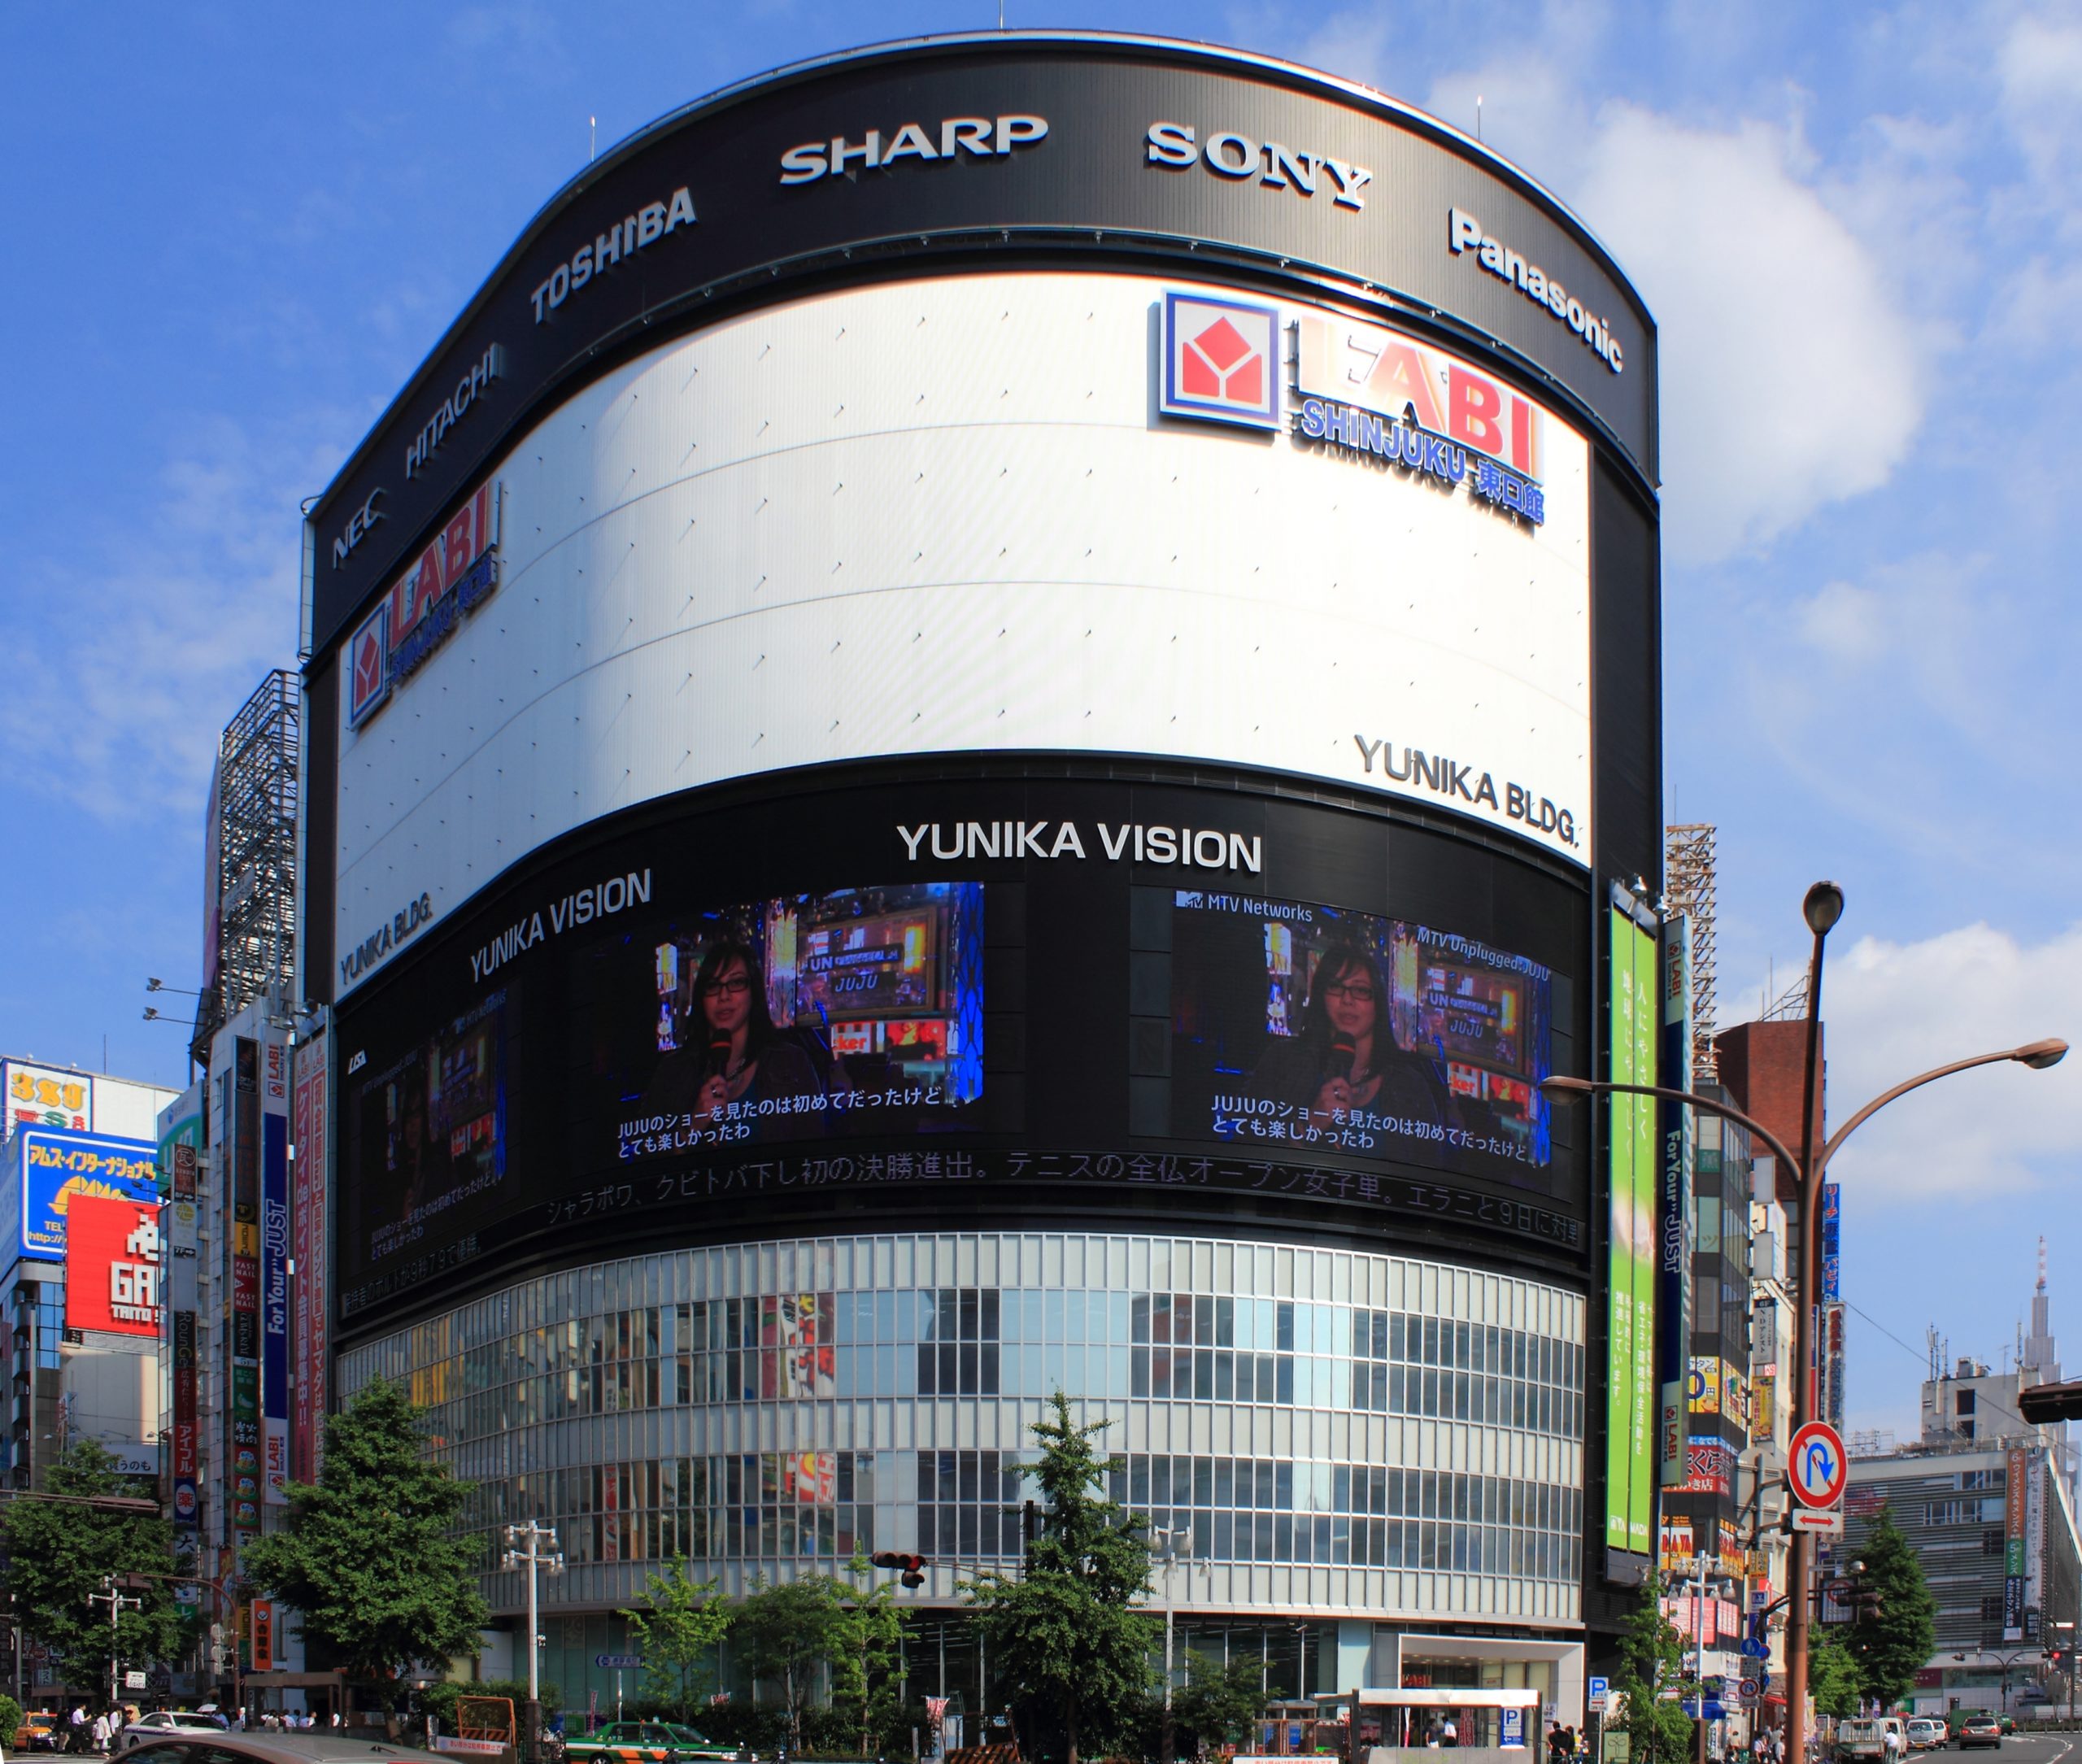 Marco urbano de Tóquio, Yunika Vision, fecha suas portas